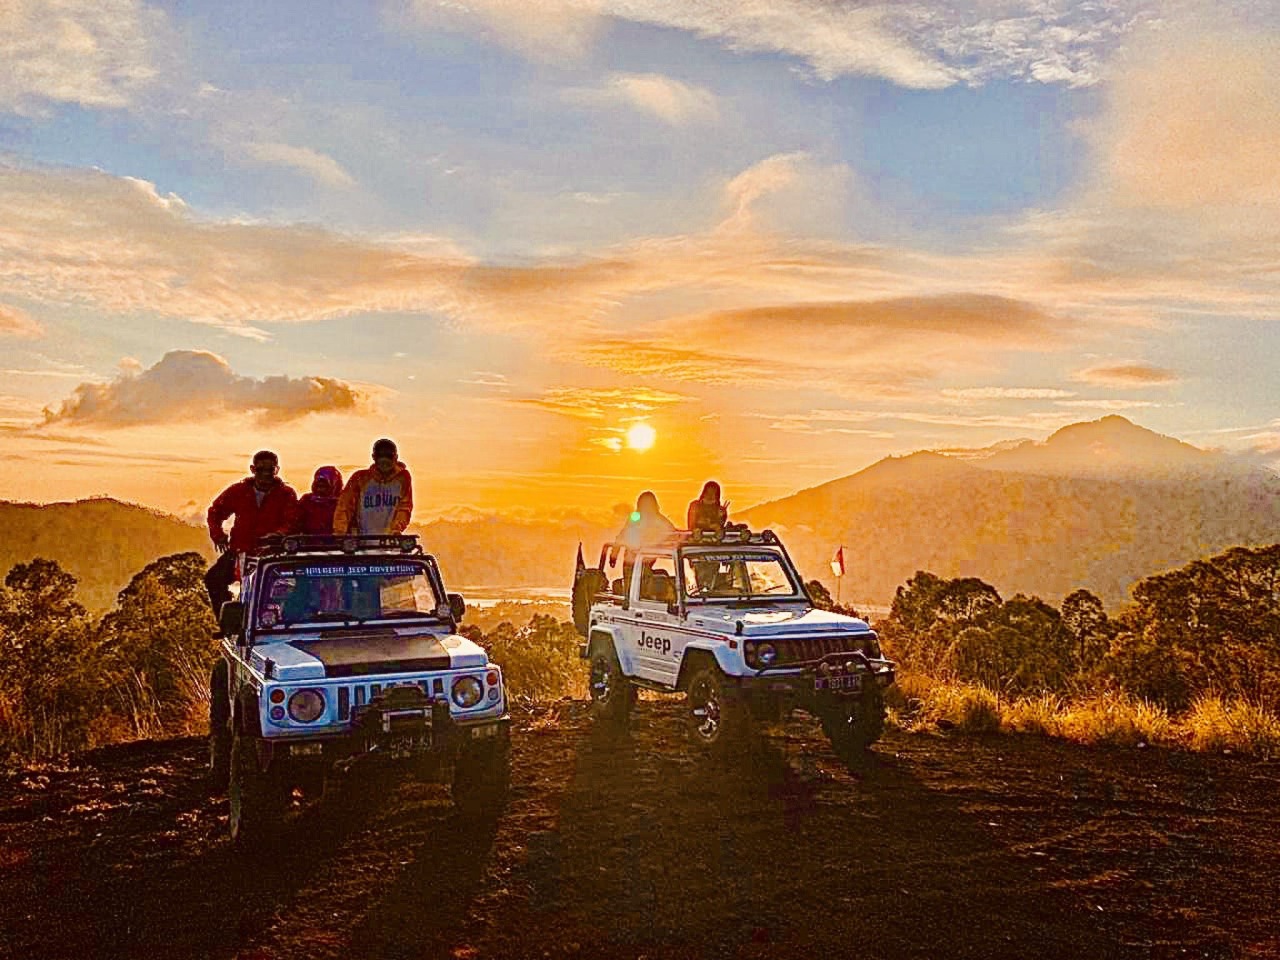 Захватывающий джиппинг на вулкане Батур | Цена 120$, отзывы, описание экскурсии